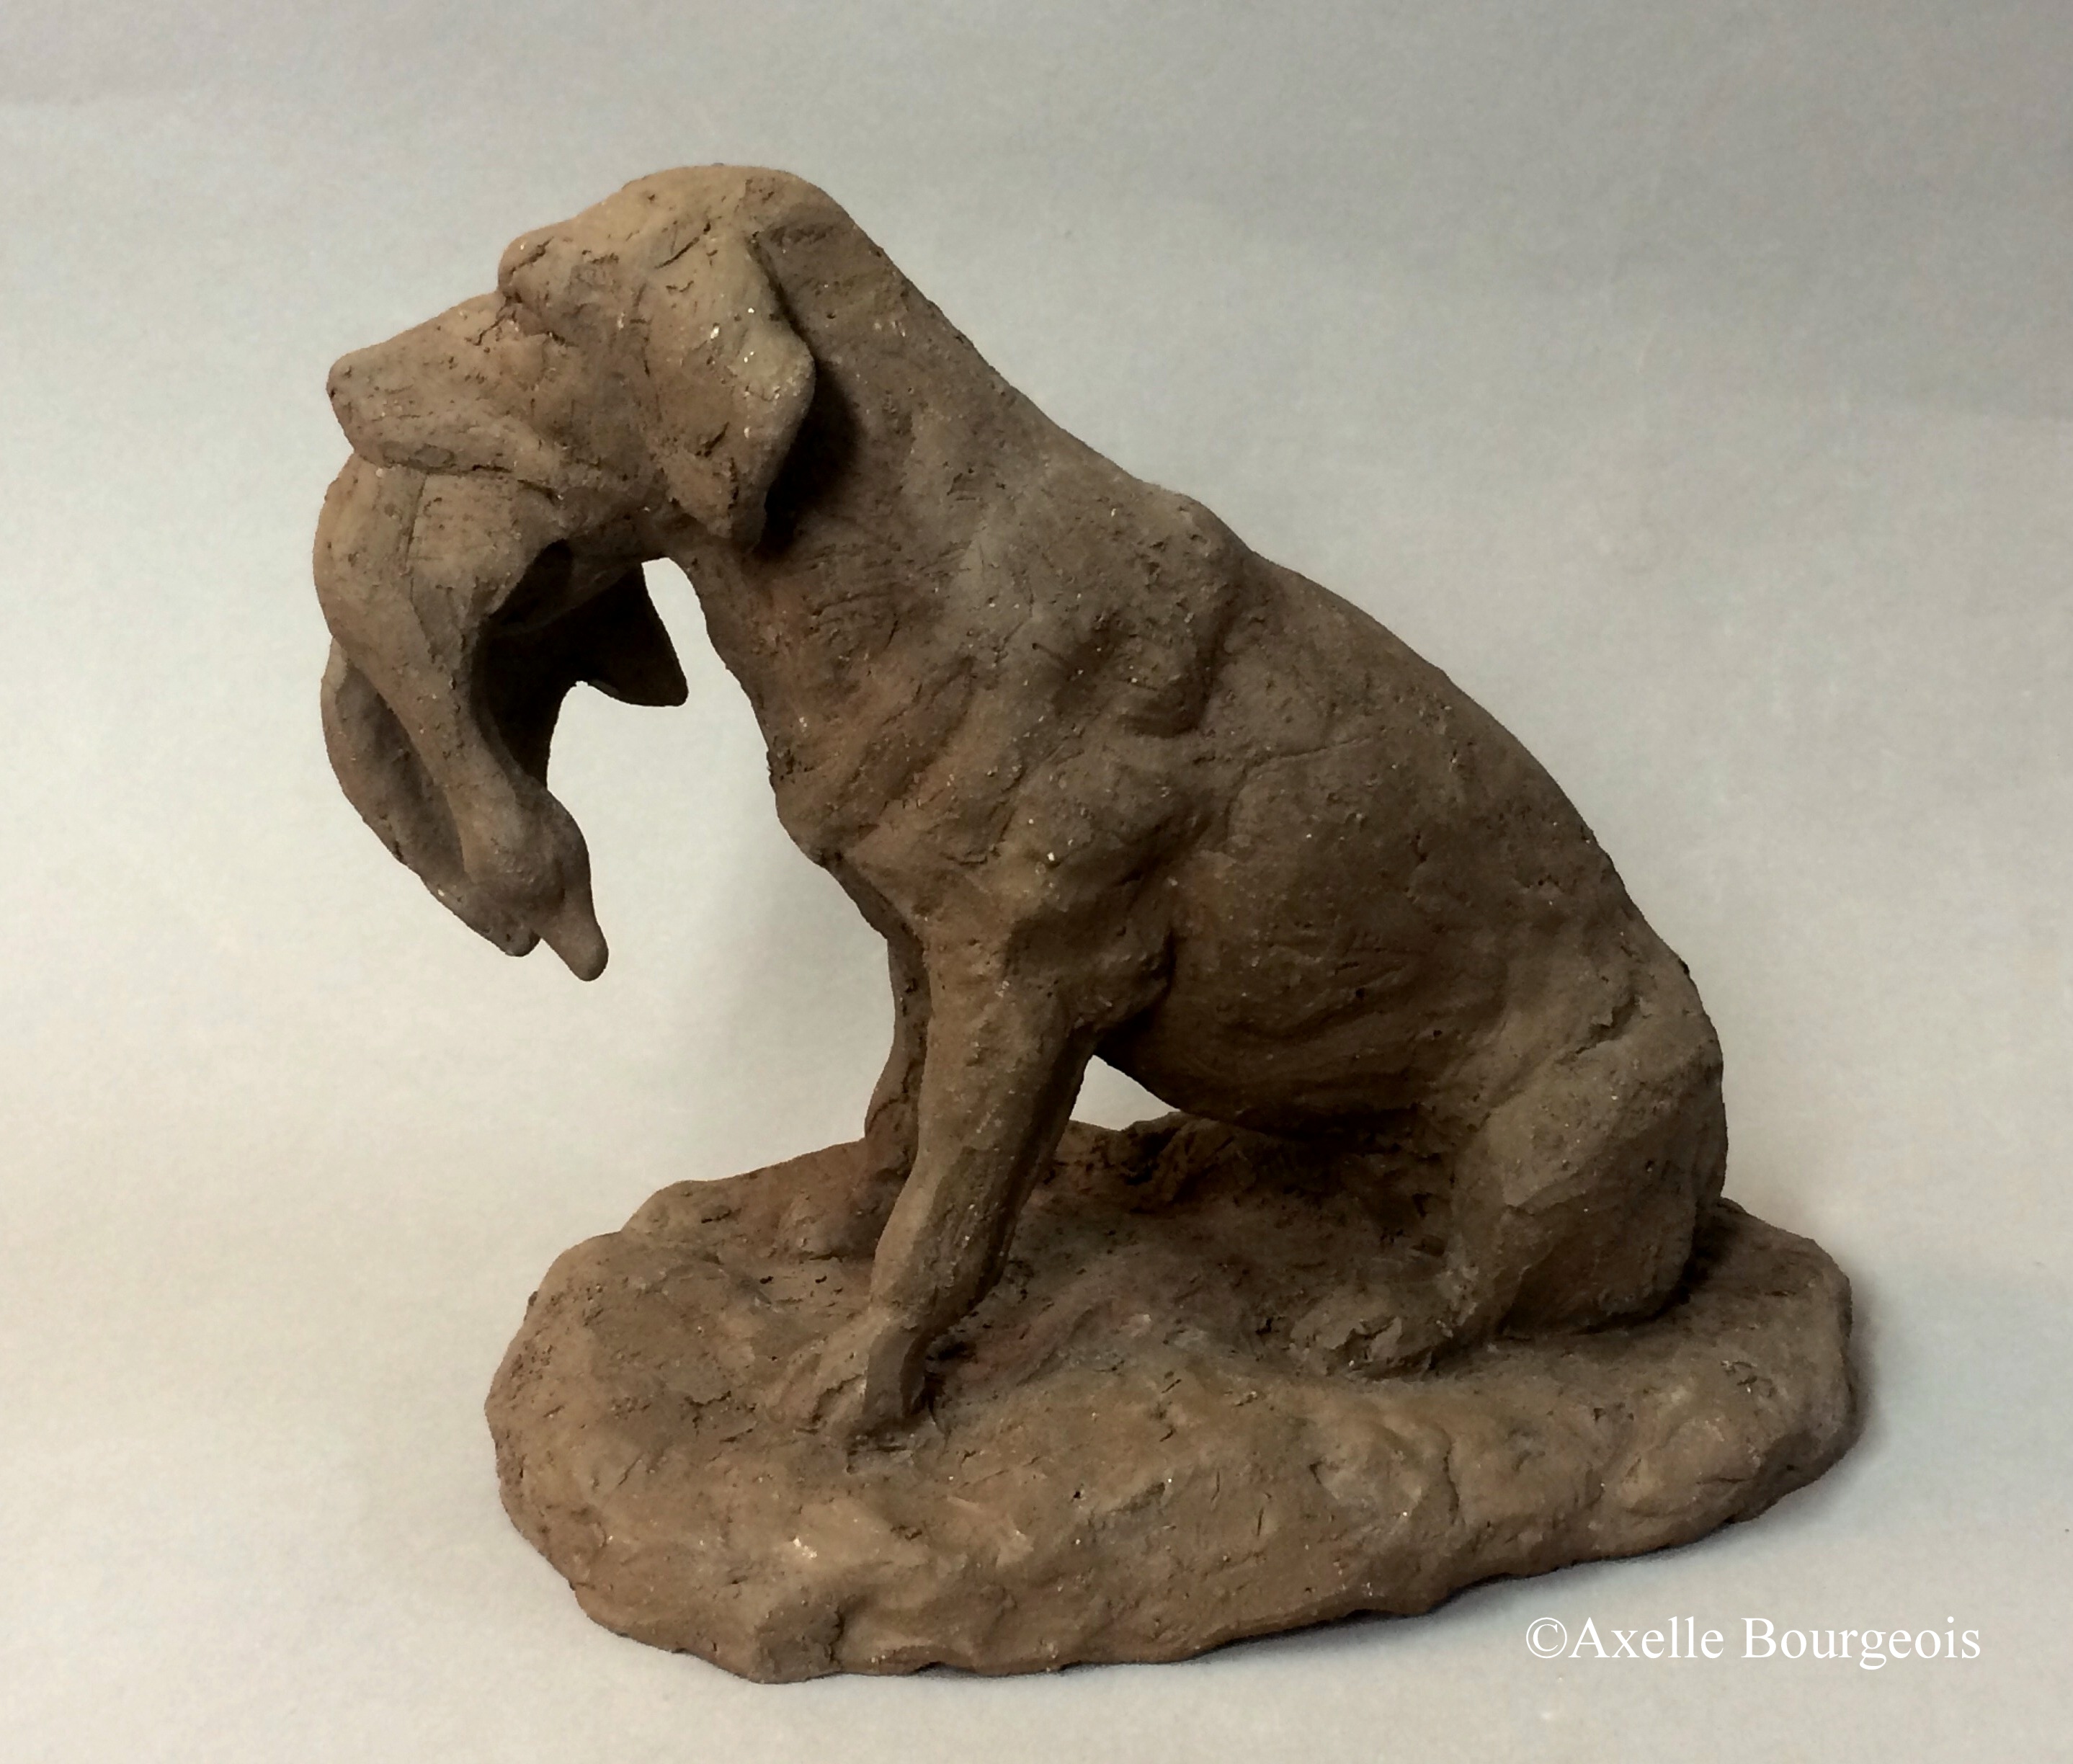 Sculpture d'artiste à vendre / achat / commande à Paris / France / Lille, en terre cuite / faïence / grès cérame / plâtre, d'un chien de chasse avec gibier